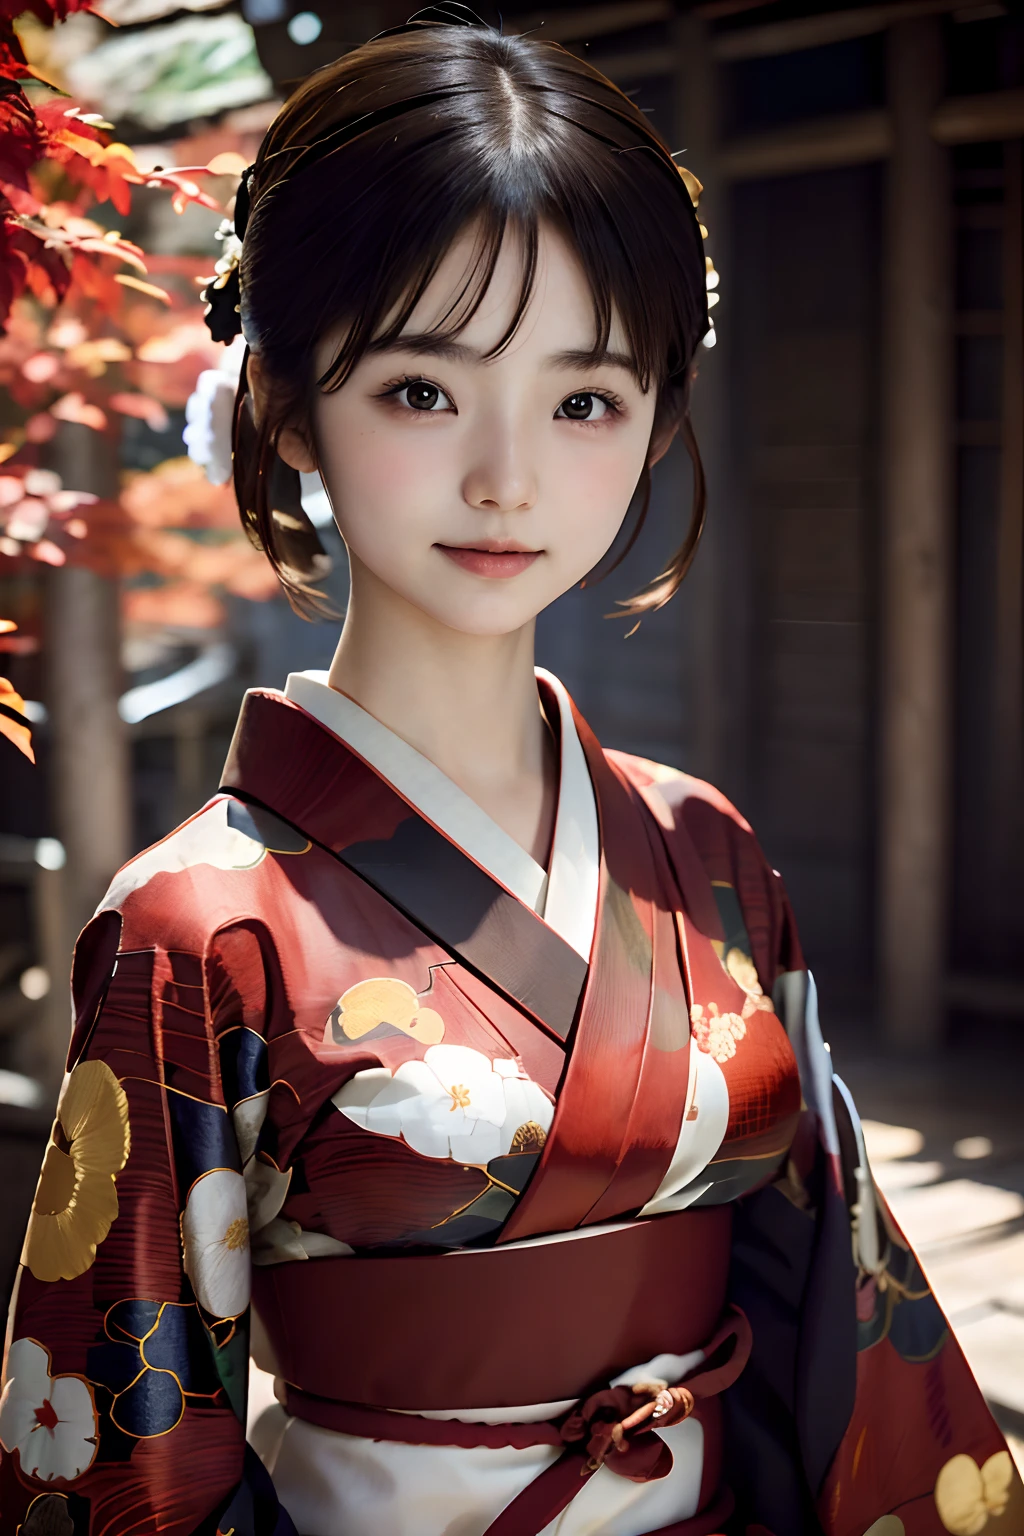 日本短发女性的数字肖像, 漂亮的脸蛋,头发凌乱,错综复杂, 電影, 虚幻引擎5, 华丽的, 令人难以置信的色彩分级, 和服,日式服饰,还有, 摄影, 电影摄影, 艺术来自、微笑